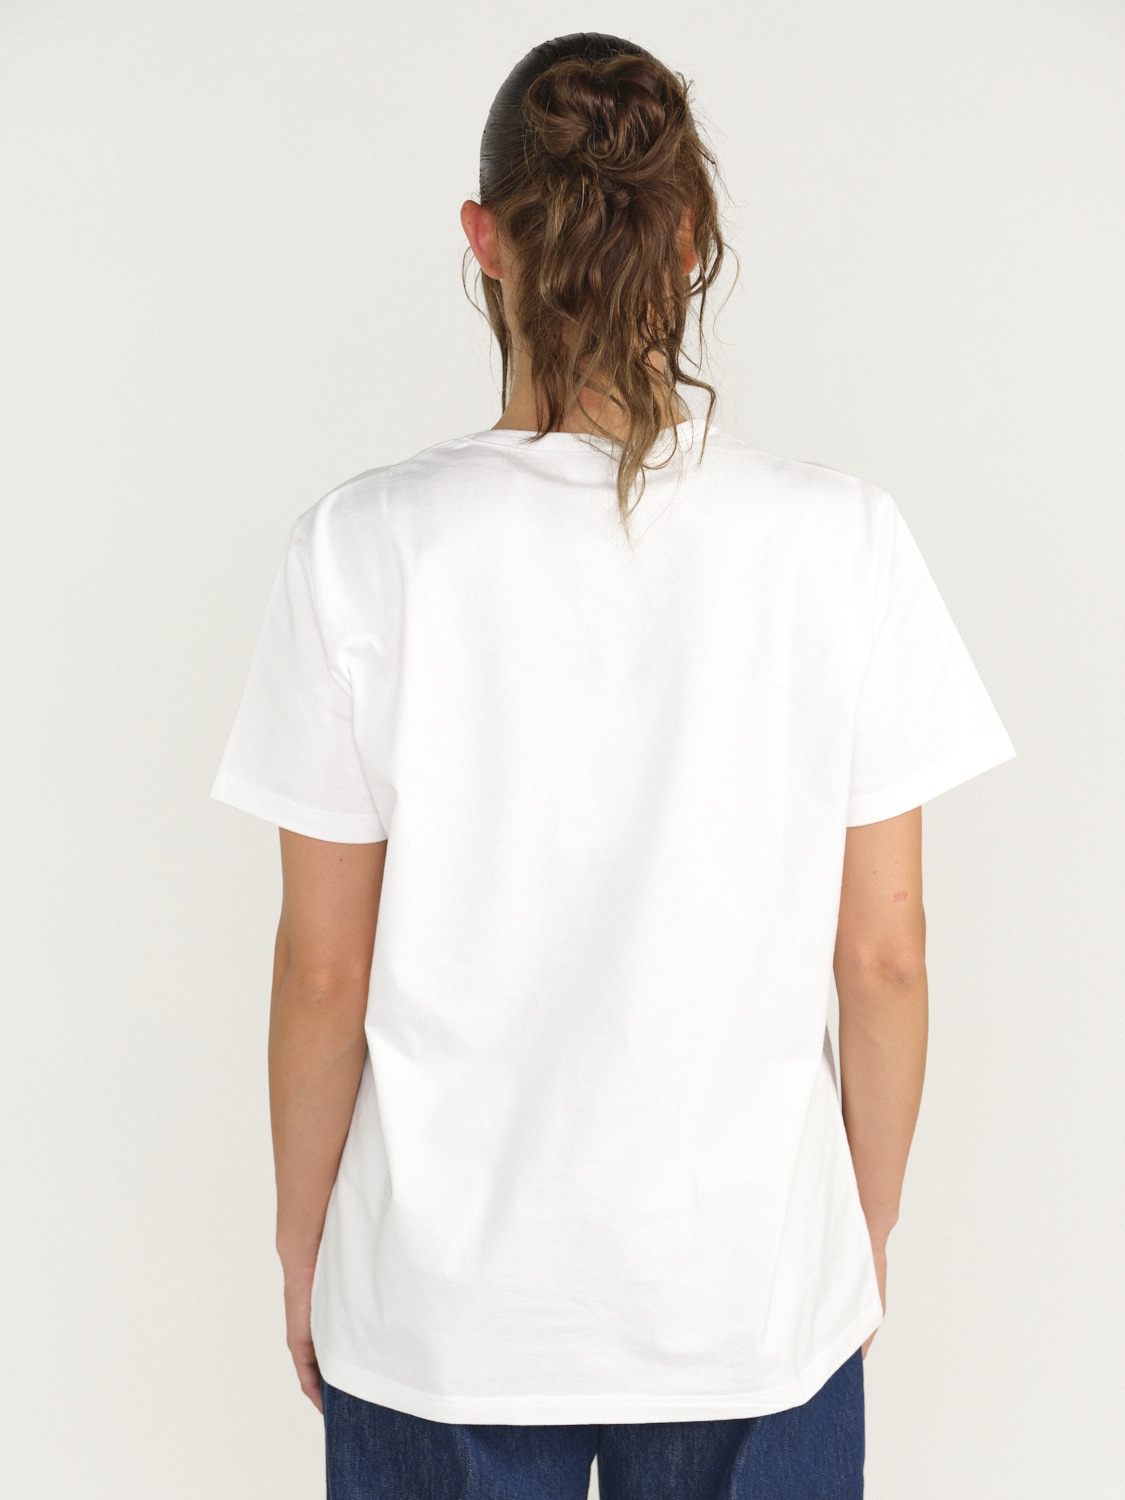 Barrie Barrie - Tapa de libro - Camiseta de algodón con parche azul XS